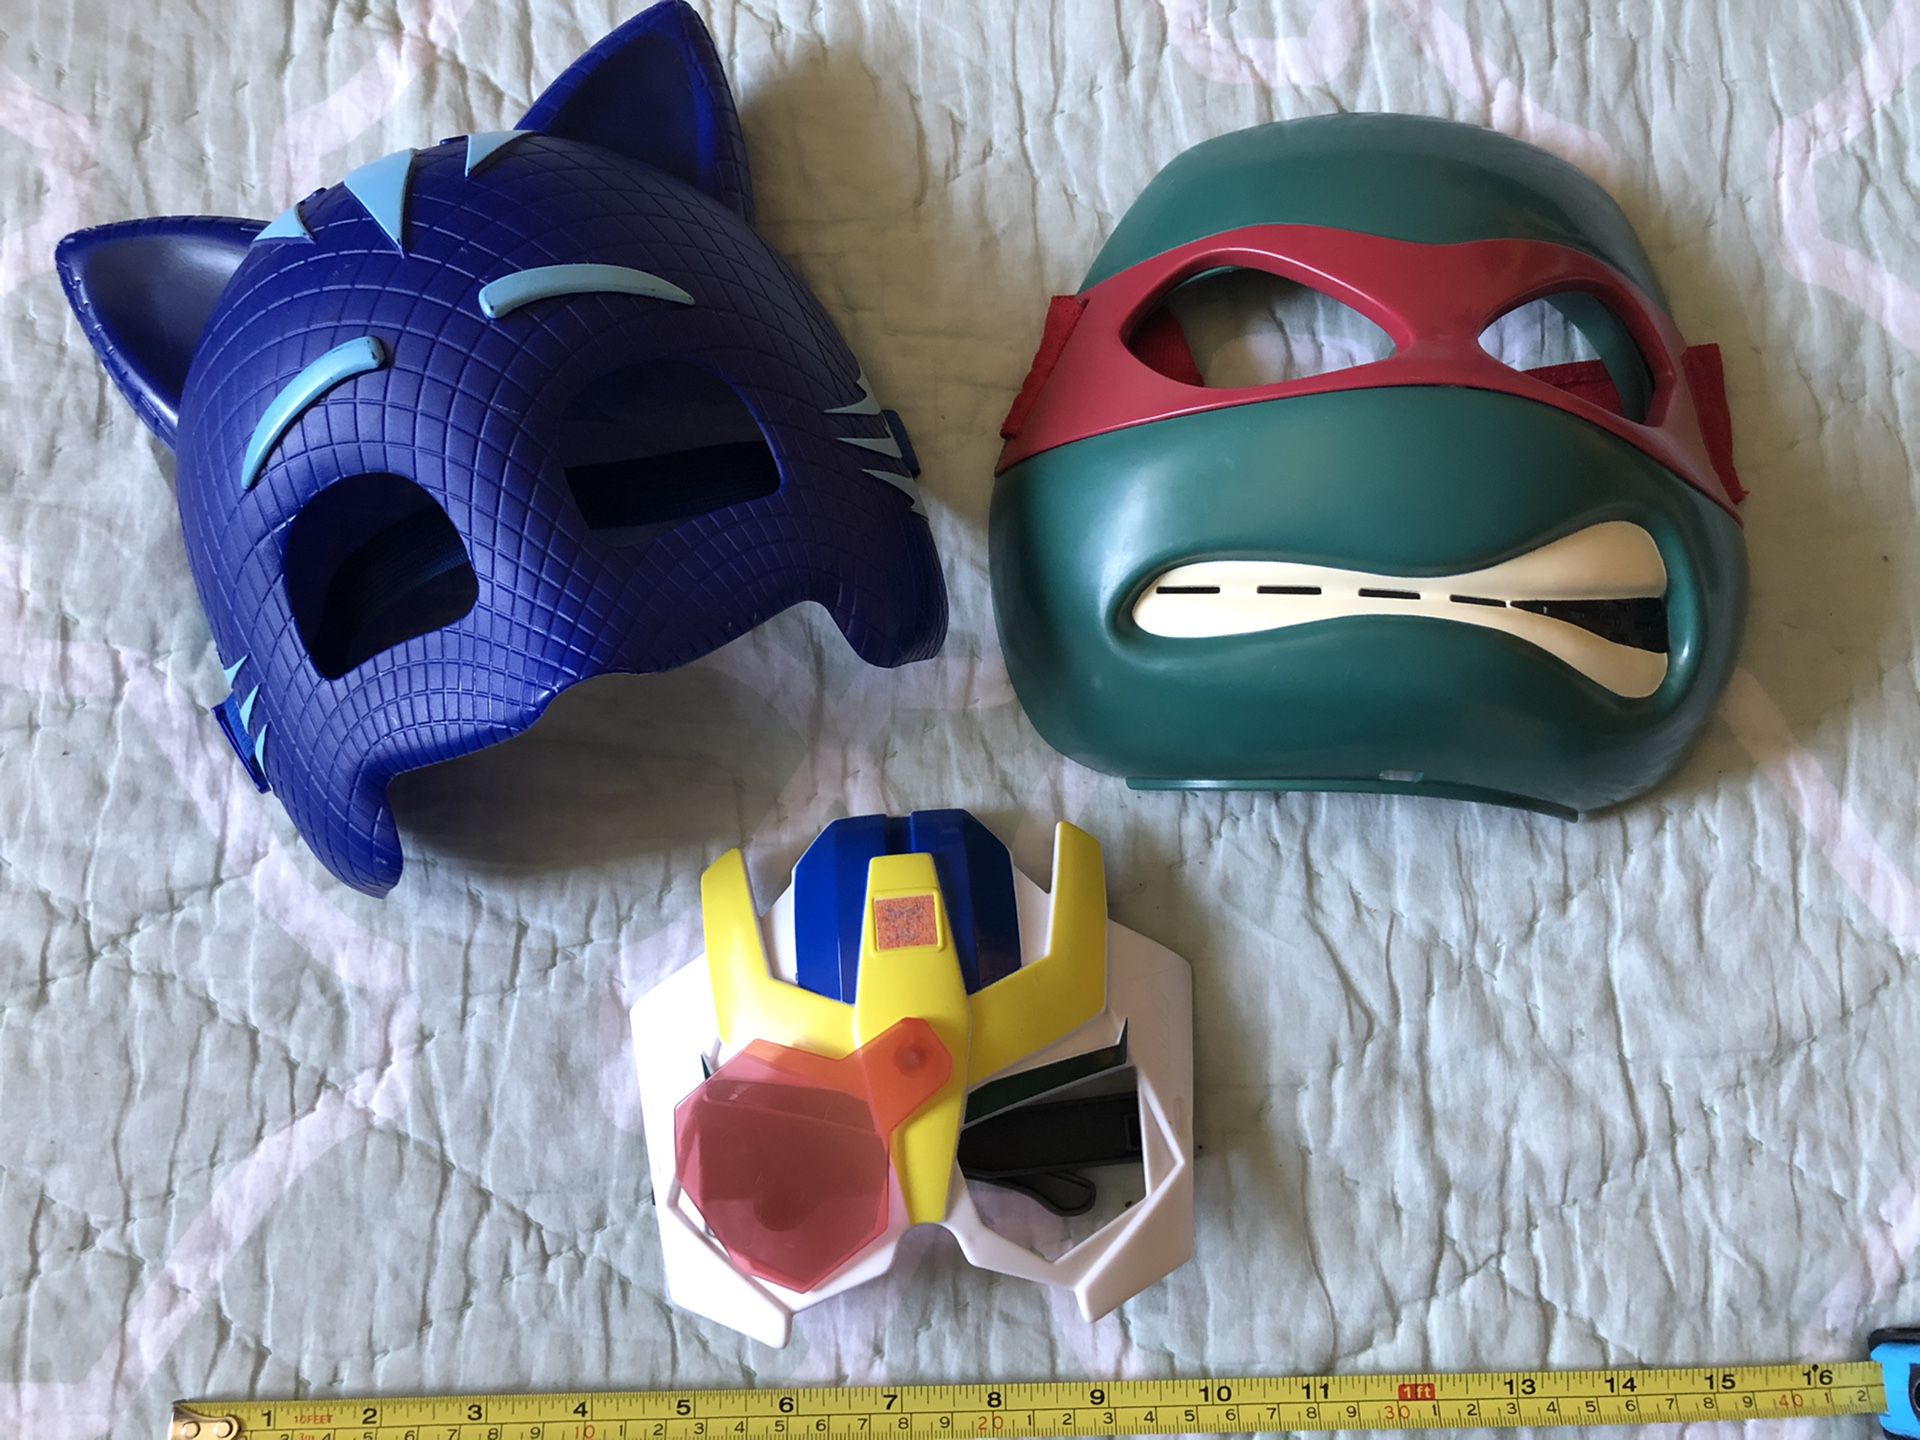 Masks (pj masks, ninja turtles, transformers)